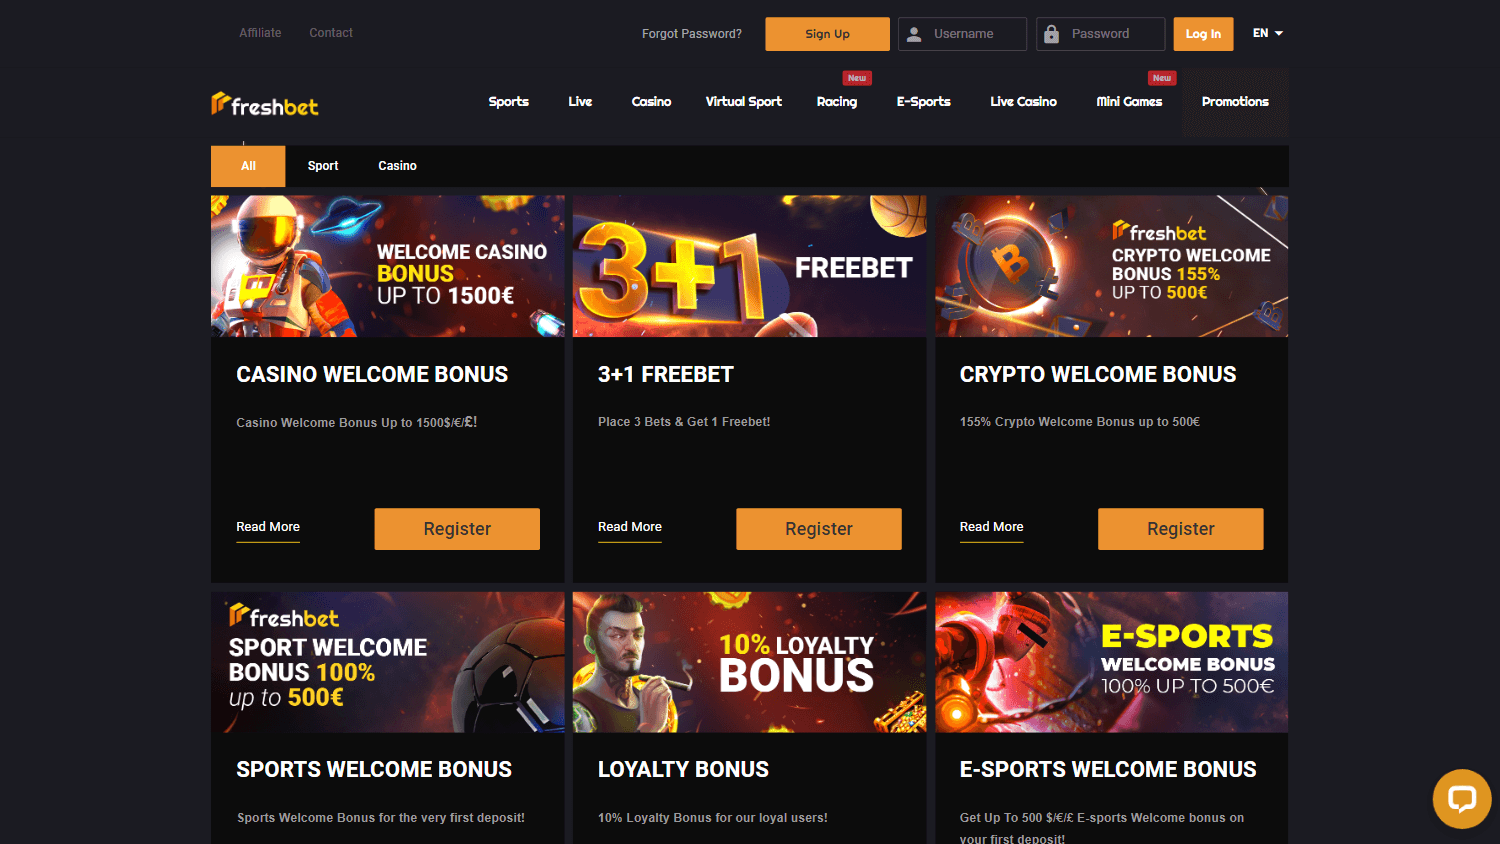 freshbet_casino_promotions_desktop